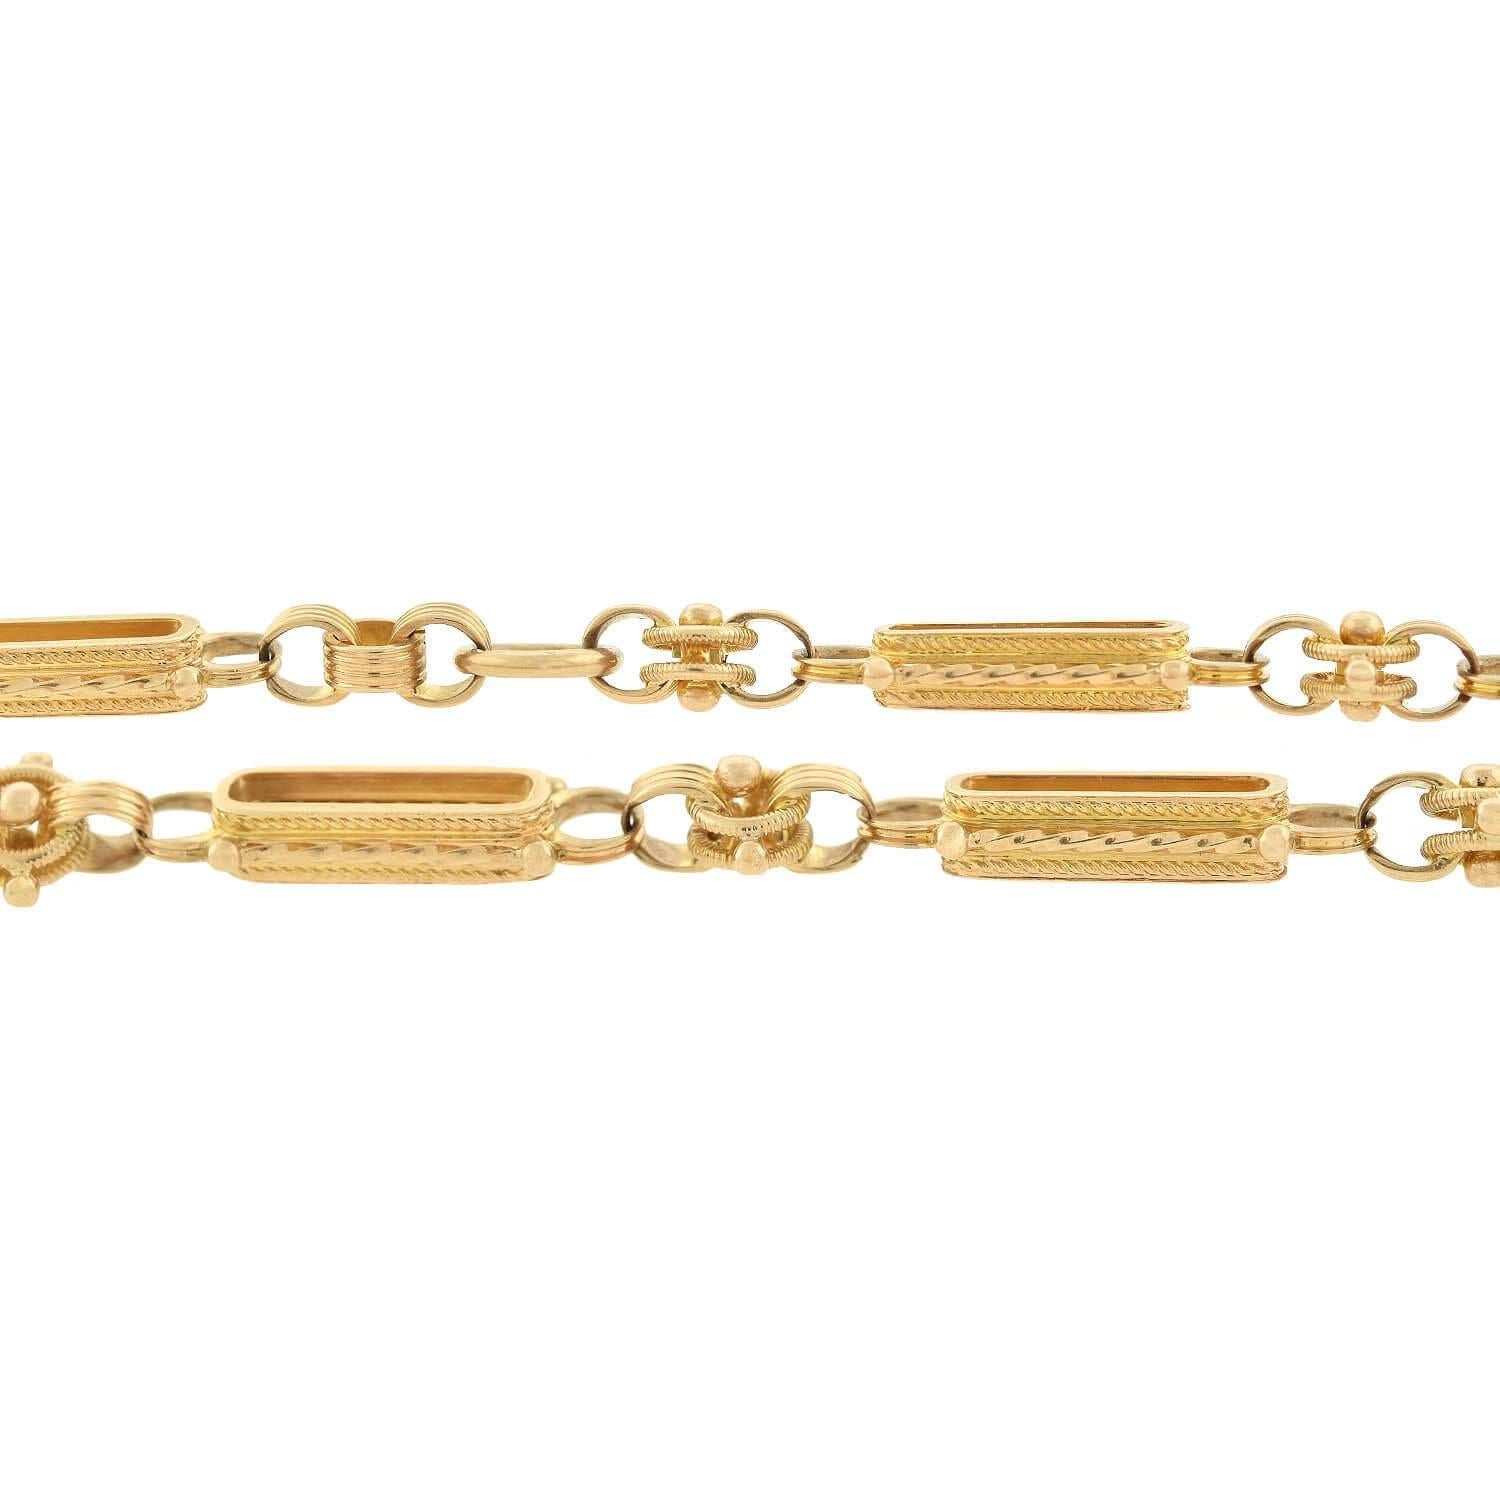 Un superbe collier de chaîne de montre de l'époque victorienne (ca1880s) ! Réalisée en or jaune 14 carats, la chaîne de montre alterne entre des maillons ovales allongés ornés d'accents torsadés et des maillons ronds et enroulés avec des détails